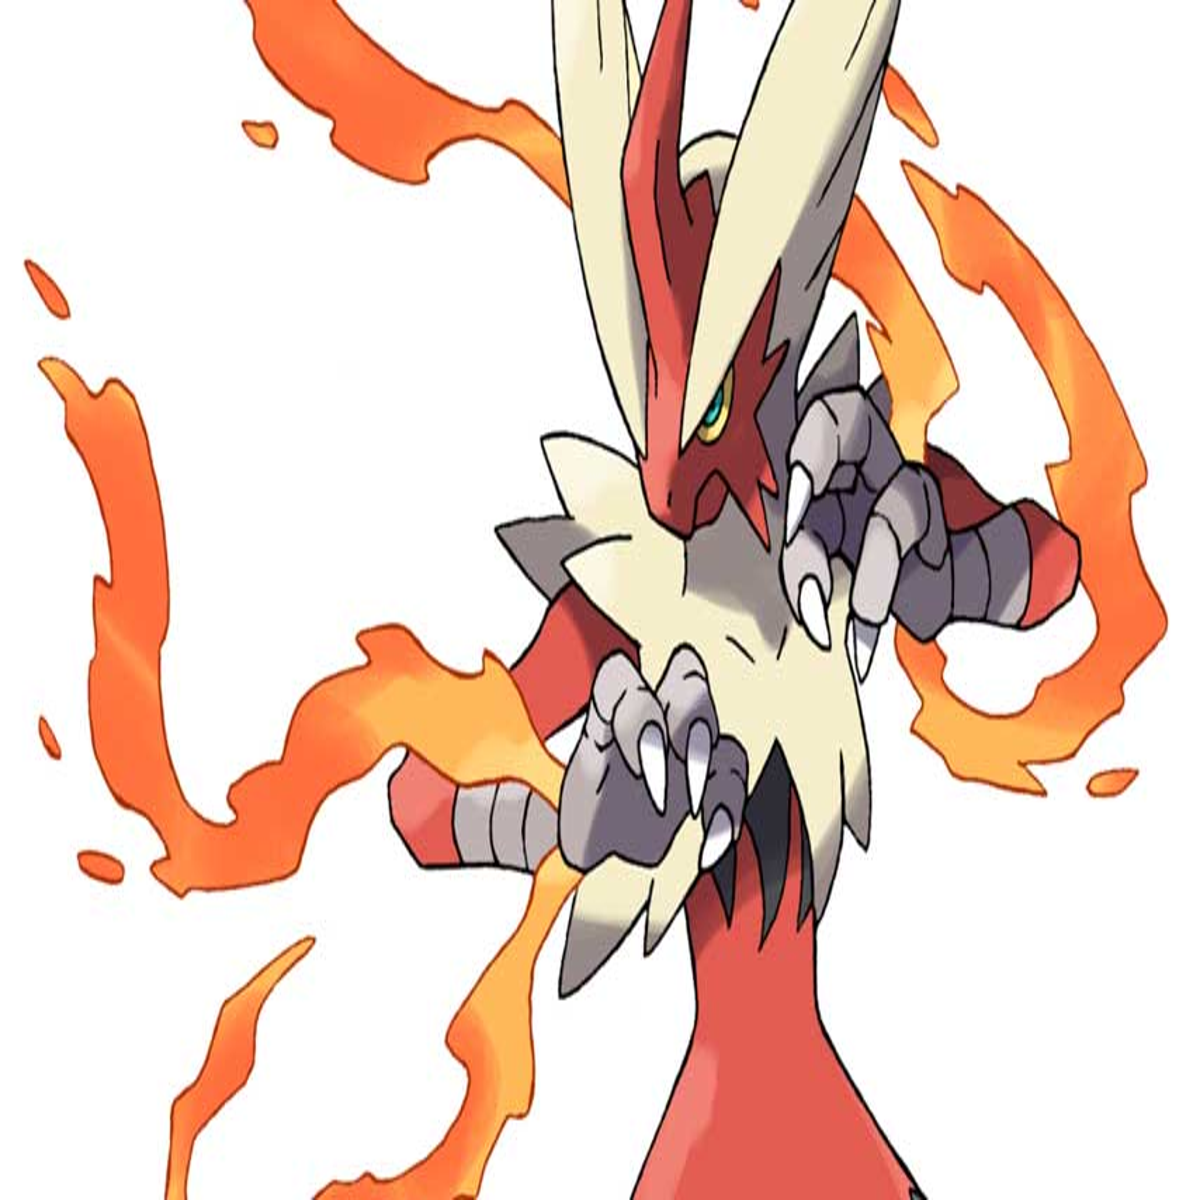 Sableye Mega Evolution Revealed for Pokémon Omega Ruby/Alpha